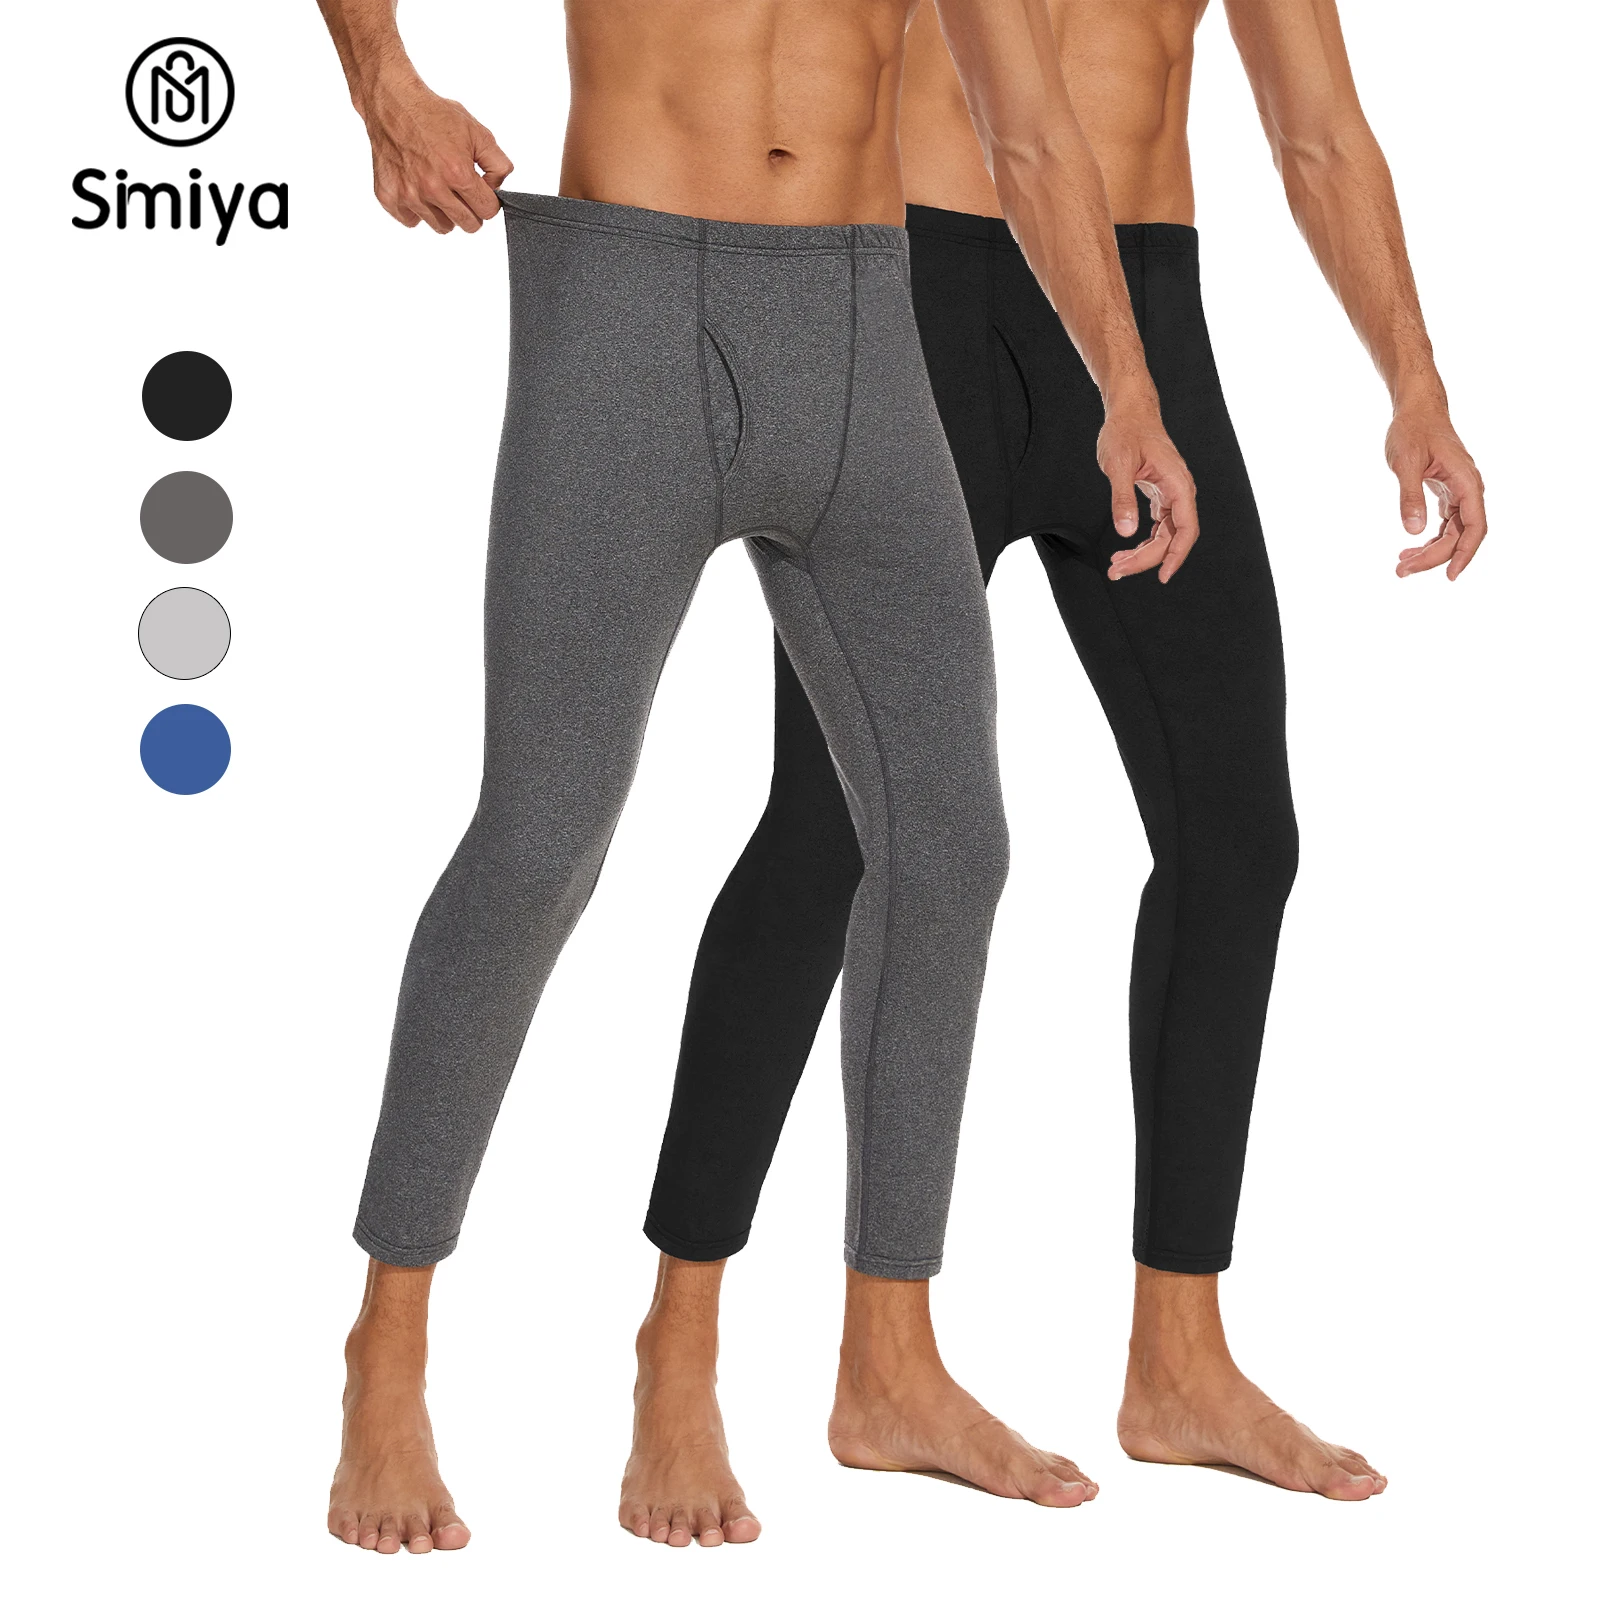 

Кальсоны мужские, термобелье, леггинсы, ультрамягкие штаны с флисовой подкладкой, базовые брюки для повседневной носки, зимняя уличная одежда